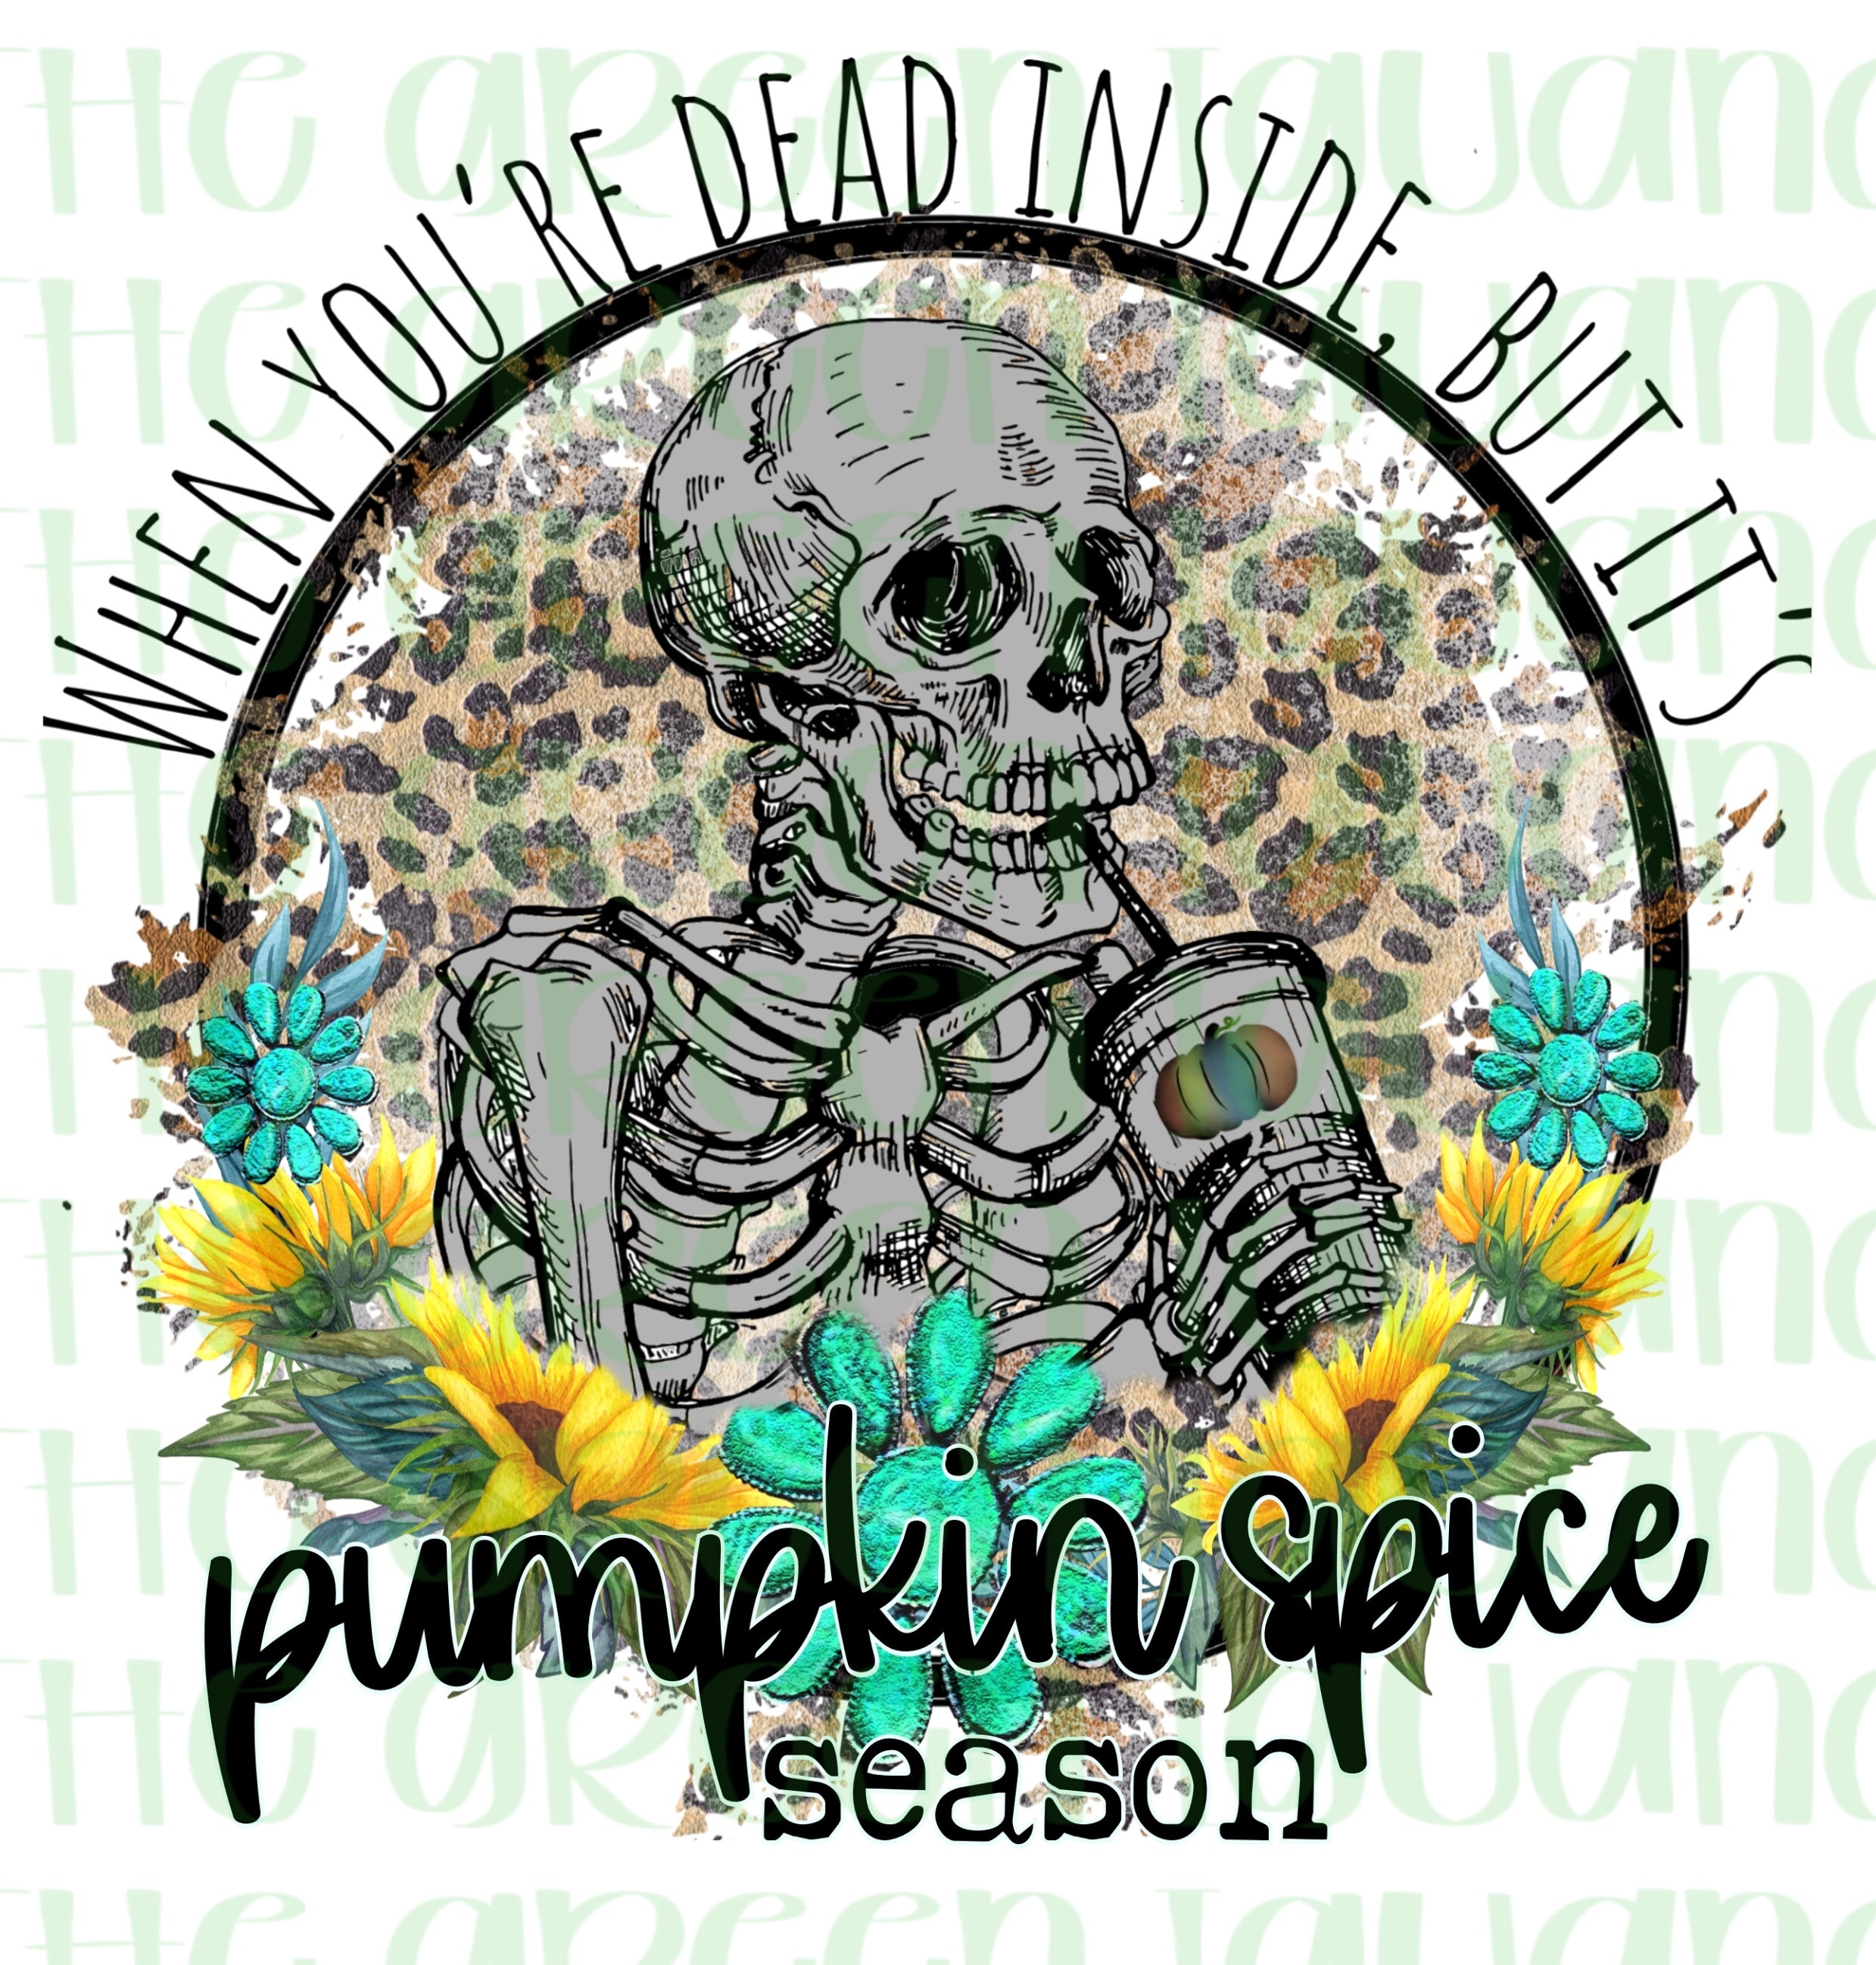 When you’re dead inside but it’s pumpkin spice season - DTF transfer